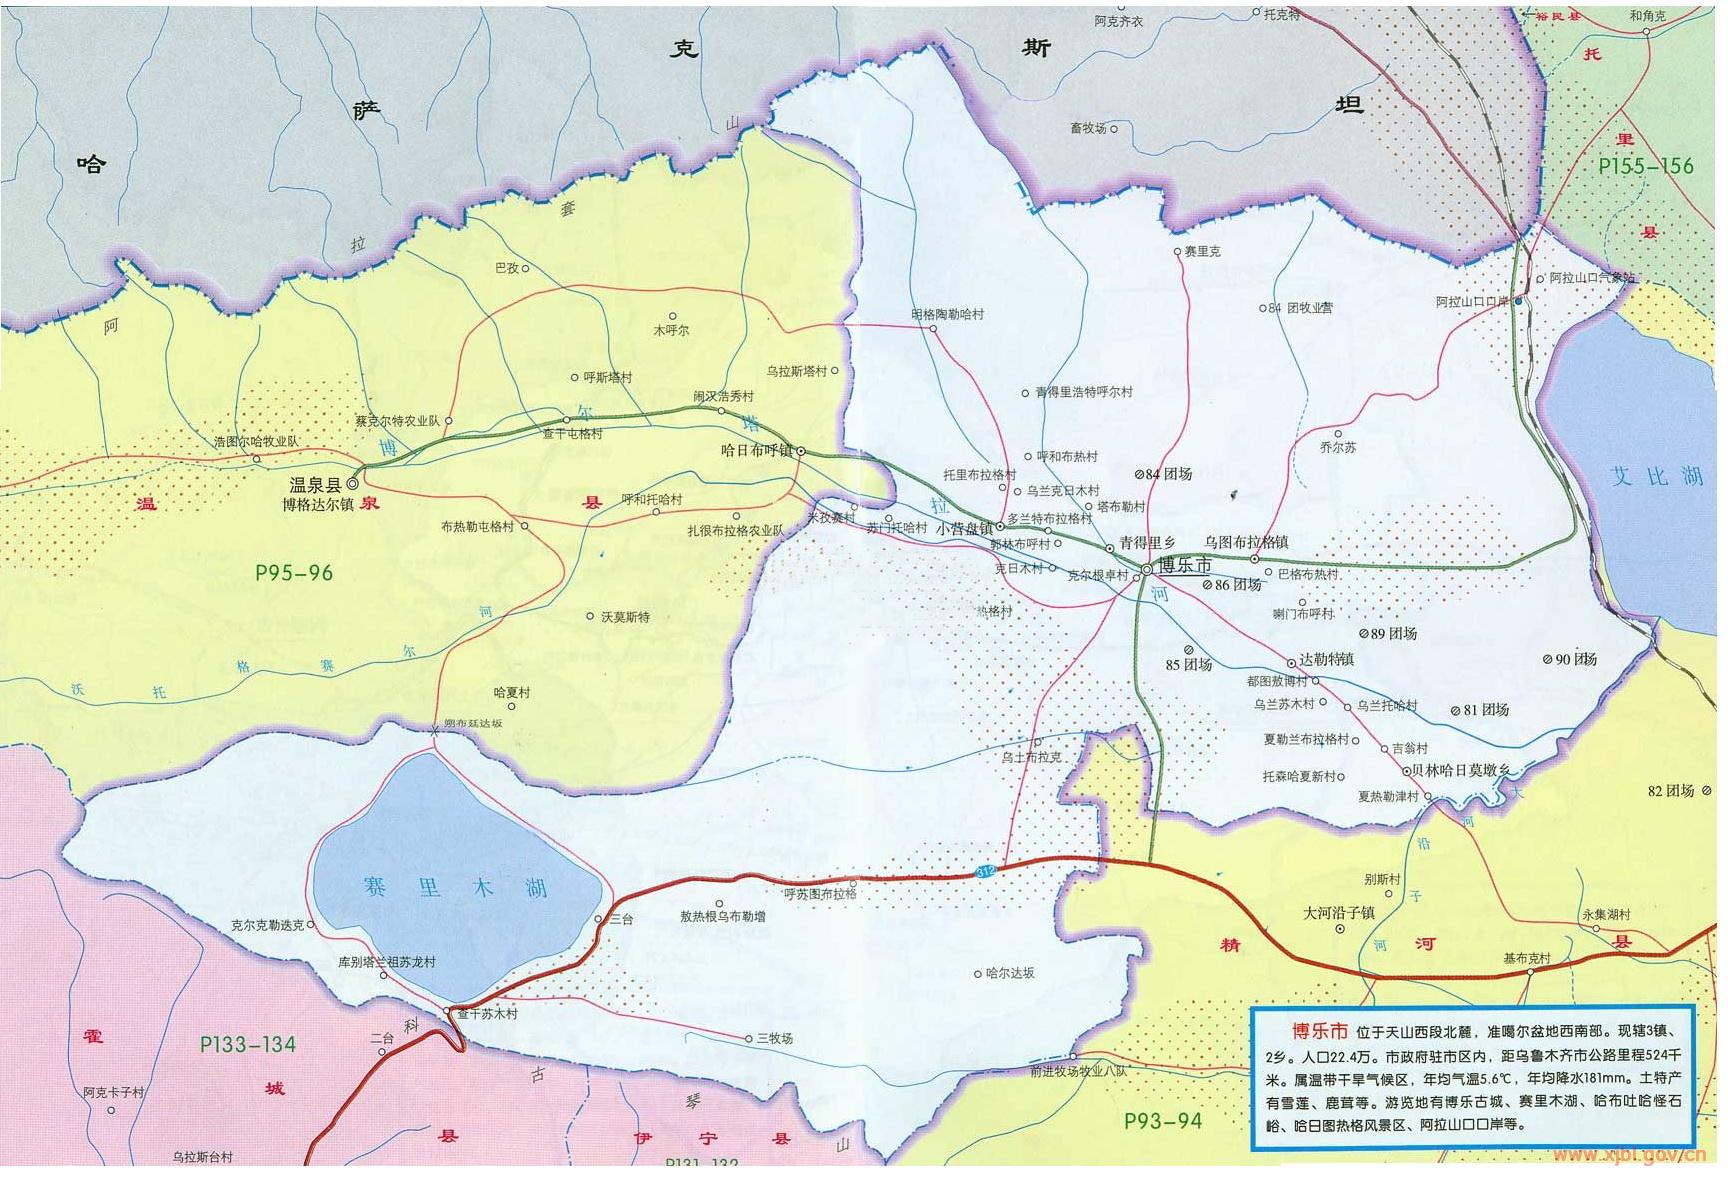 博樂行政區域圖